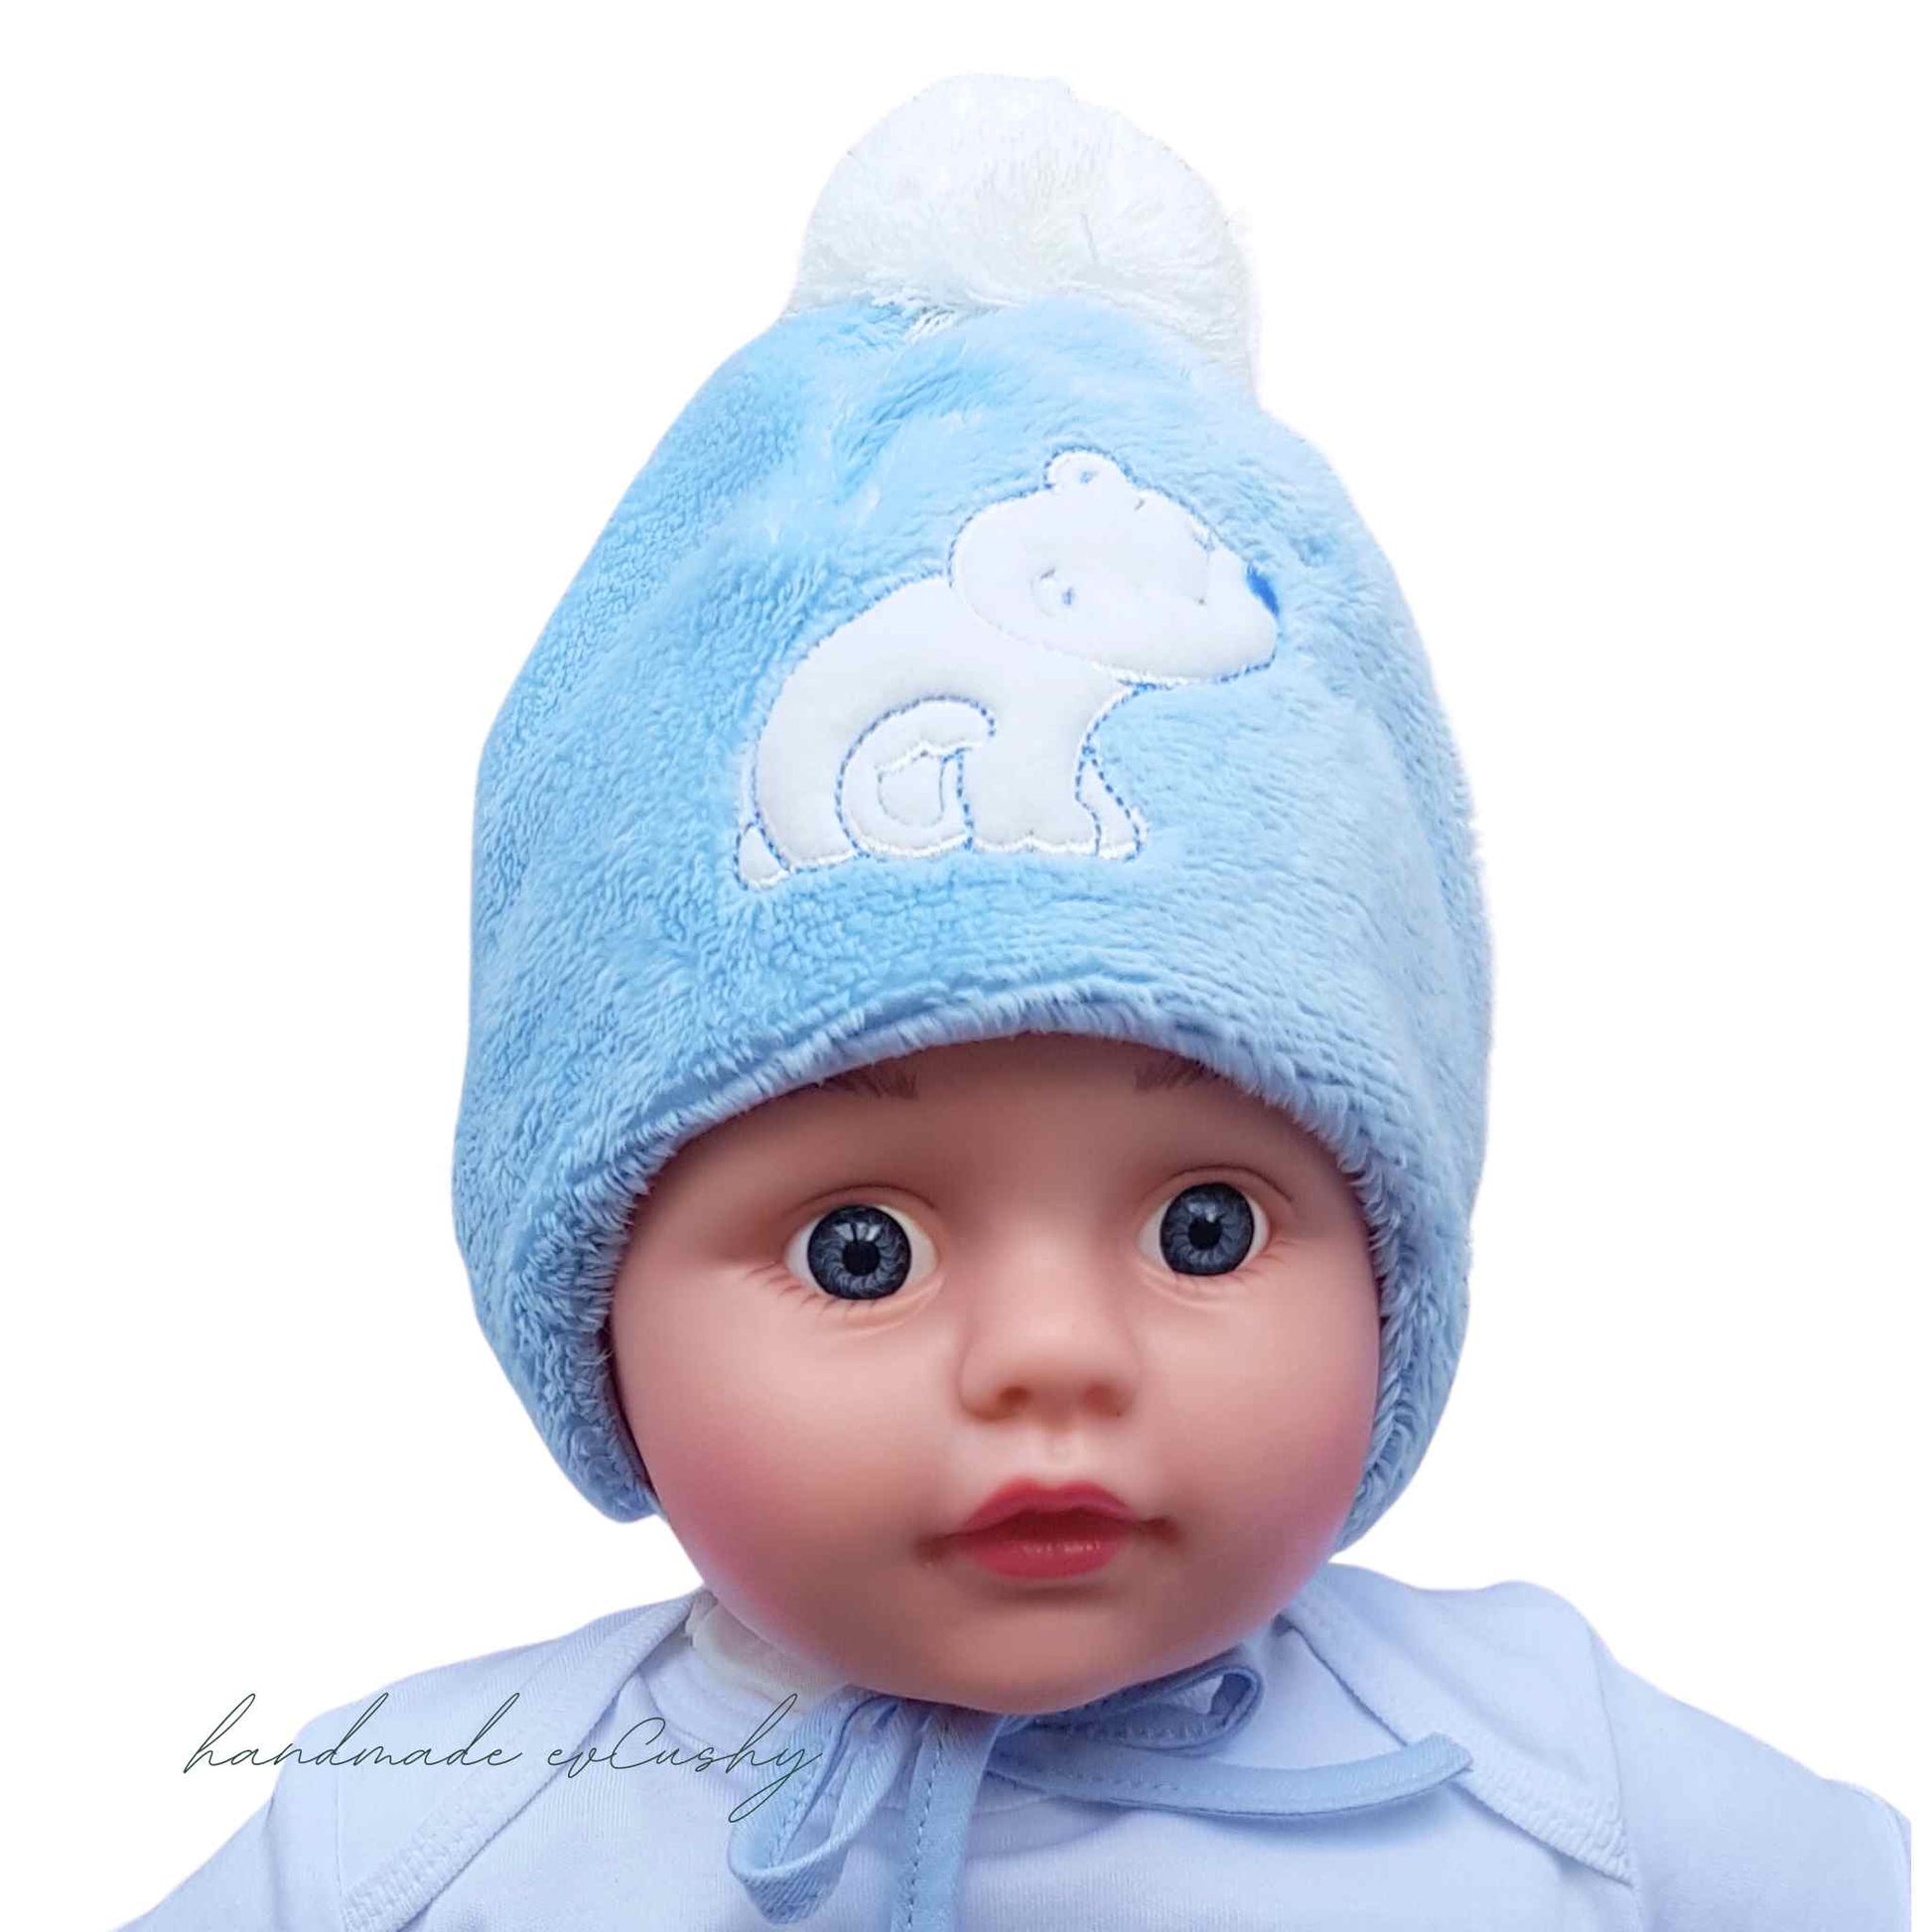 baby warm hat fleece hat with pom-pom blue colour hat with white pom-pom evCushy